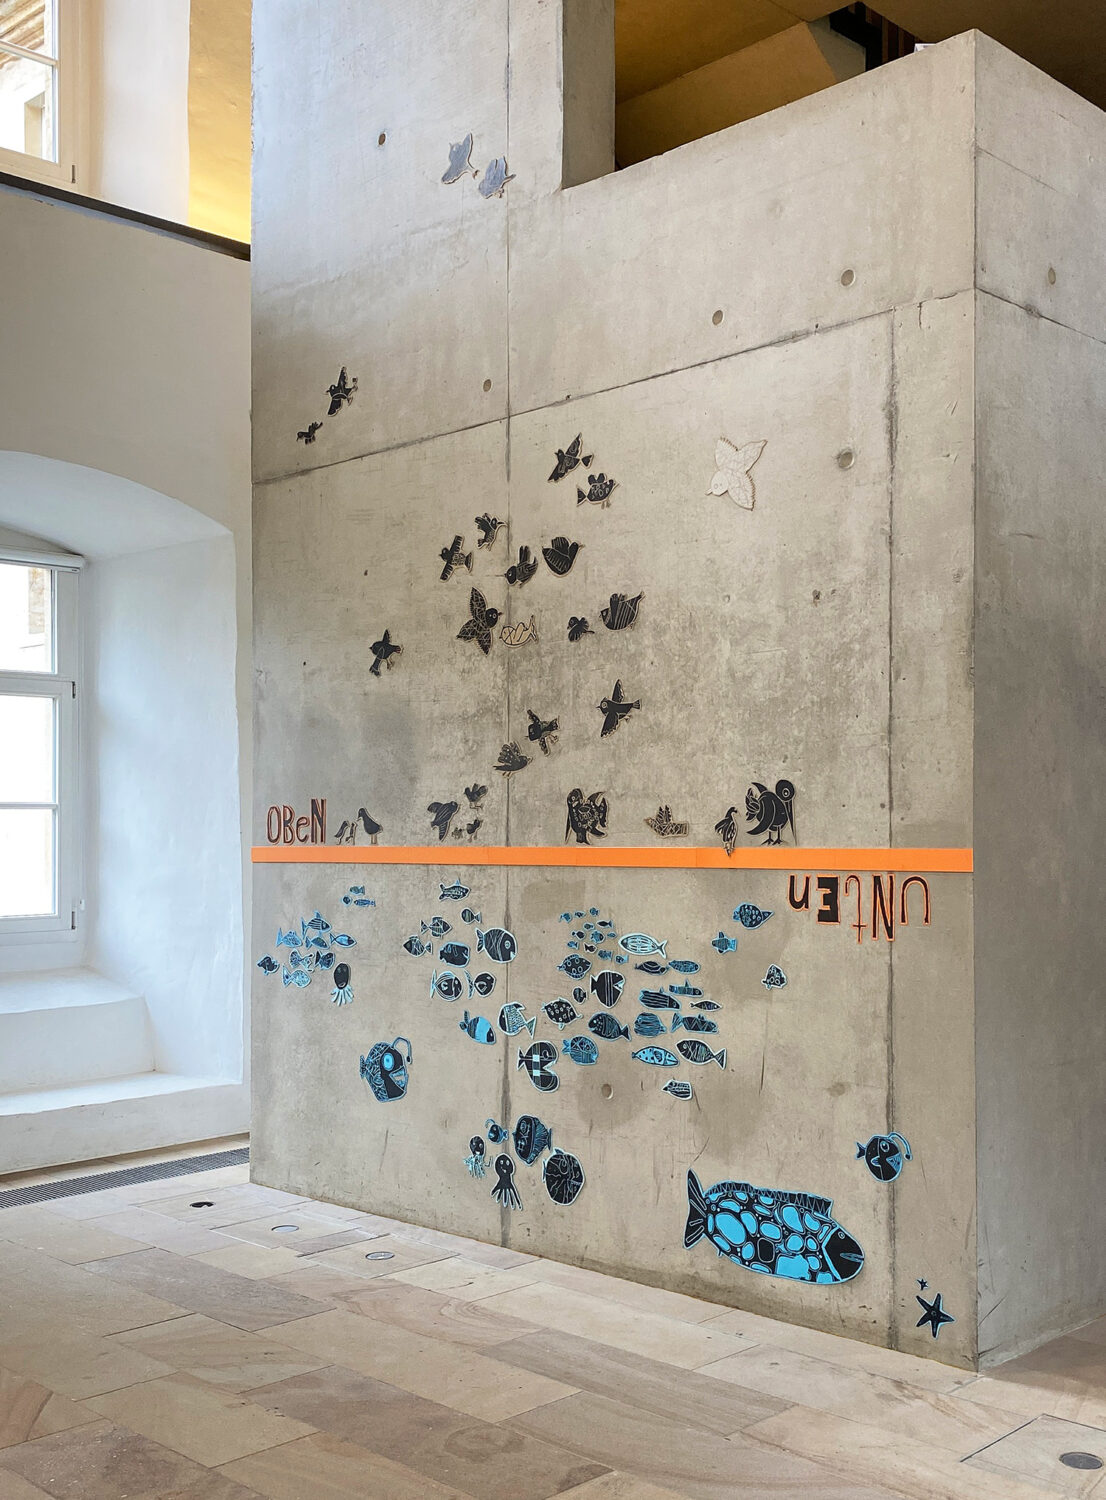 Wandinstallation aus einem Kunstprojekt mit Kindern | Ausstellung 'Jugend gestaltet 2021' | DA Kunsthaus Kloster Gravenhorst